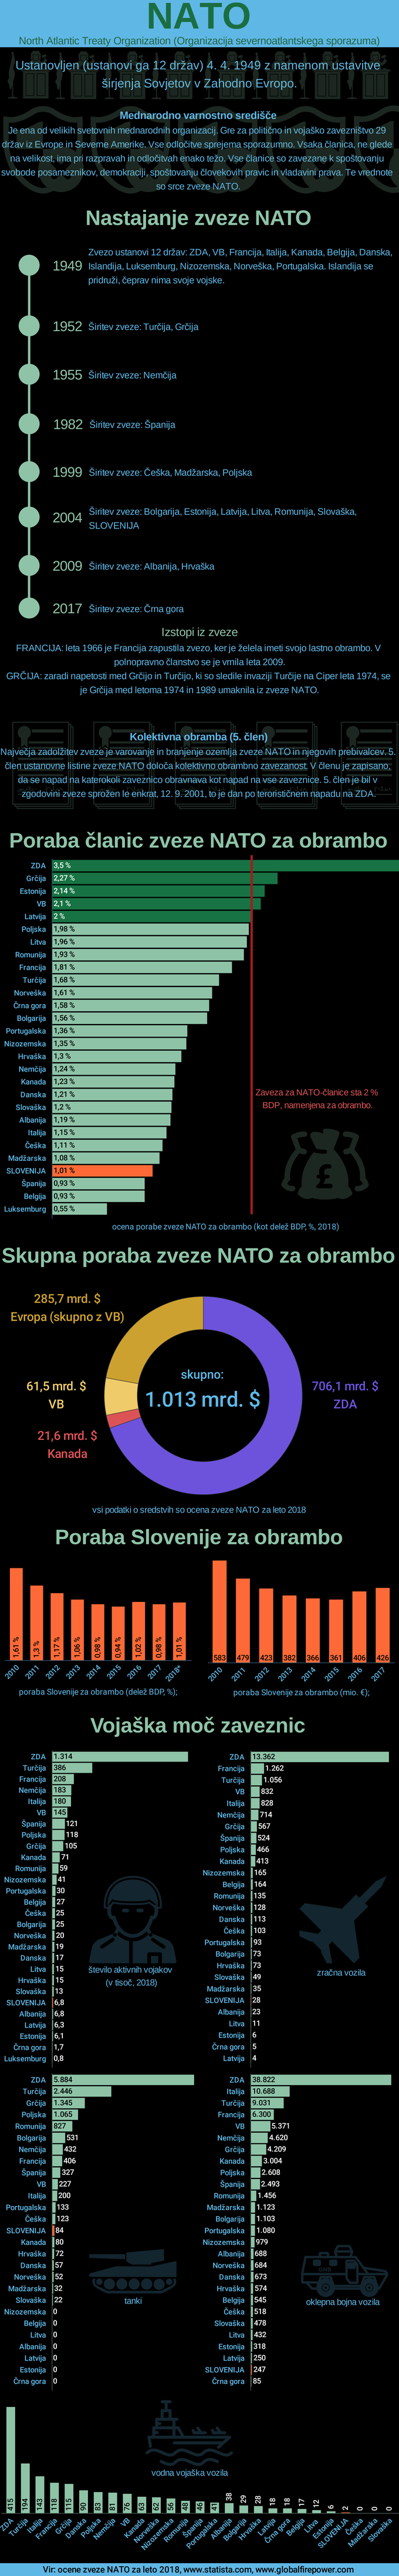 NATO splošno | Foto: Infografika: Marjan Žlogar